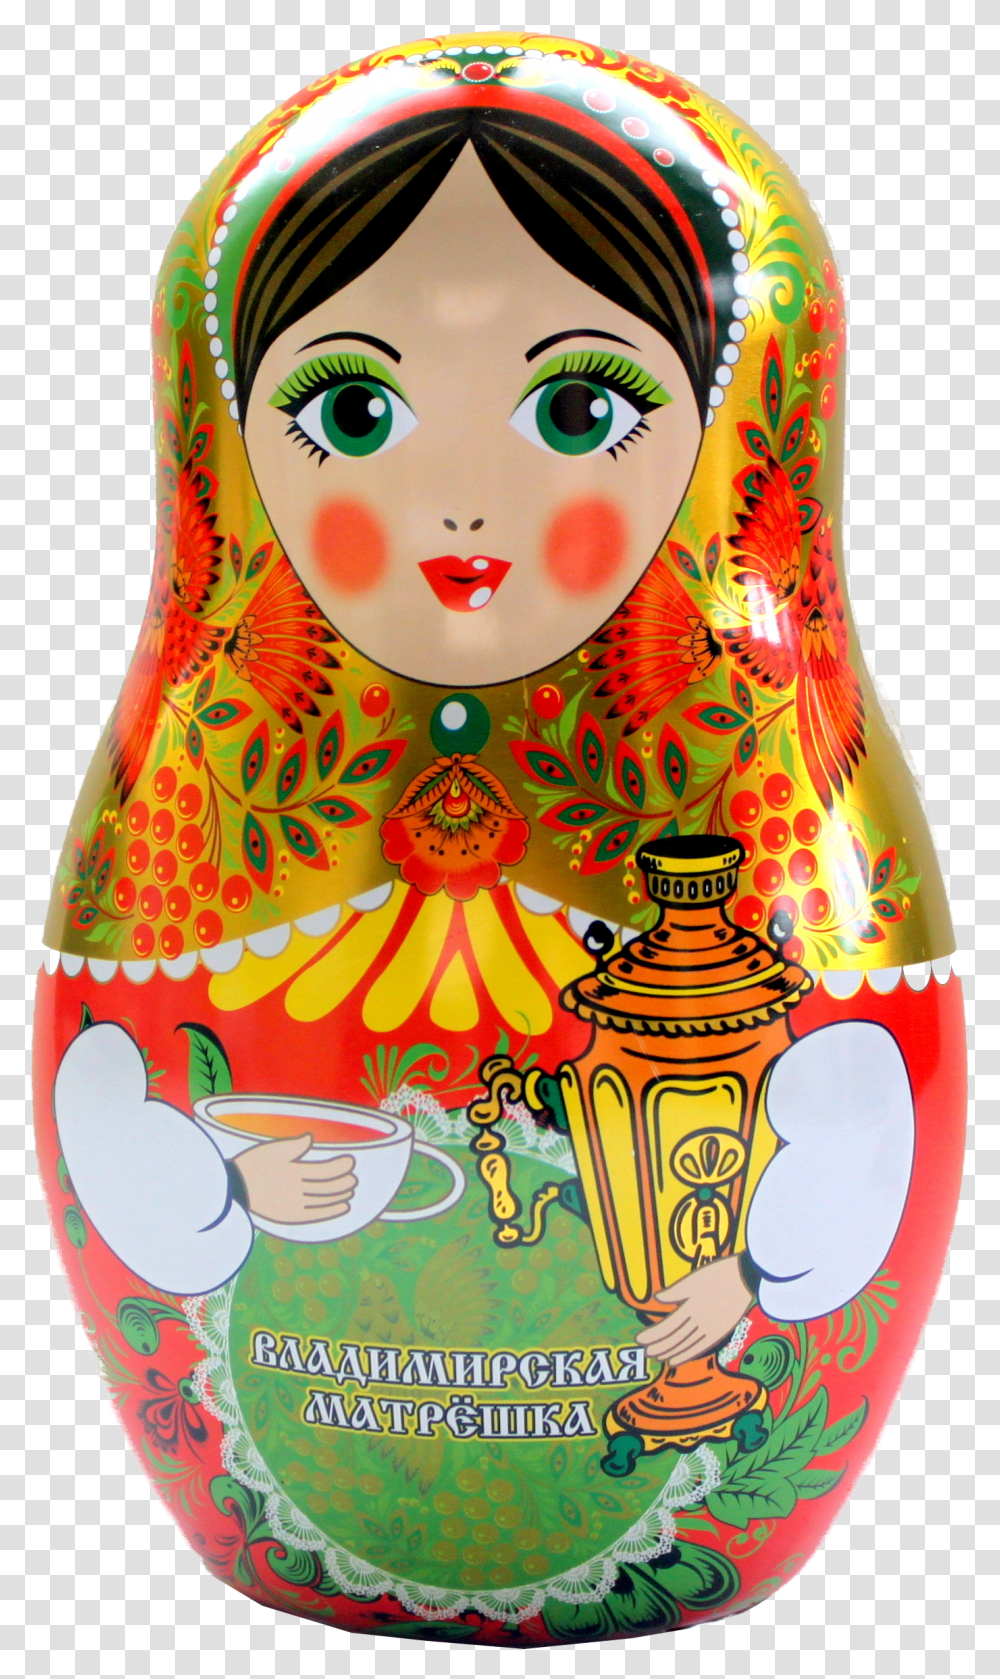 Matryoshka Doll, Toy, Beverage, Drink, Bottle Transparent Png